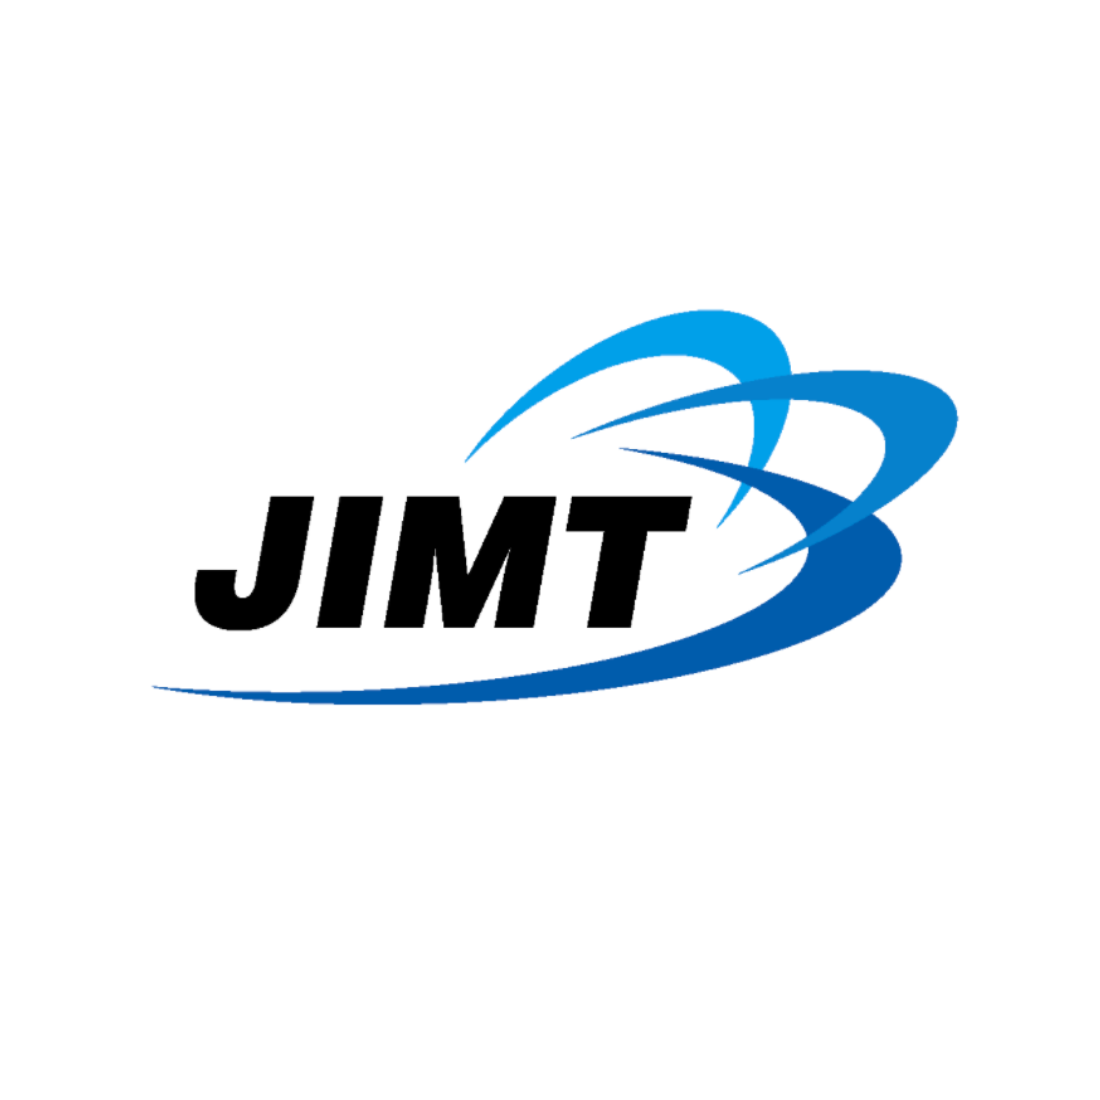 ビジネス成功のロゴデザインJIMテクノロジー様ロゴ